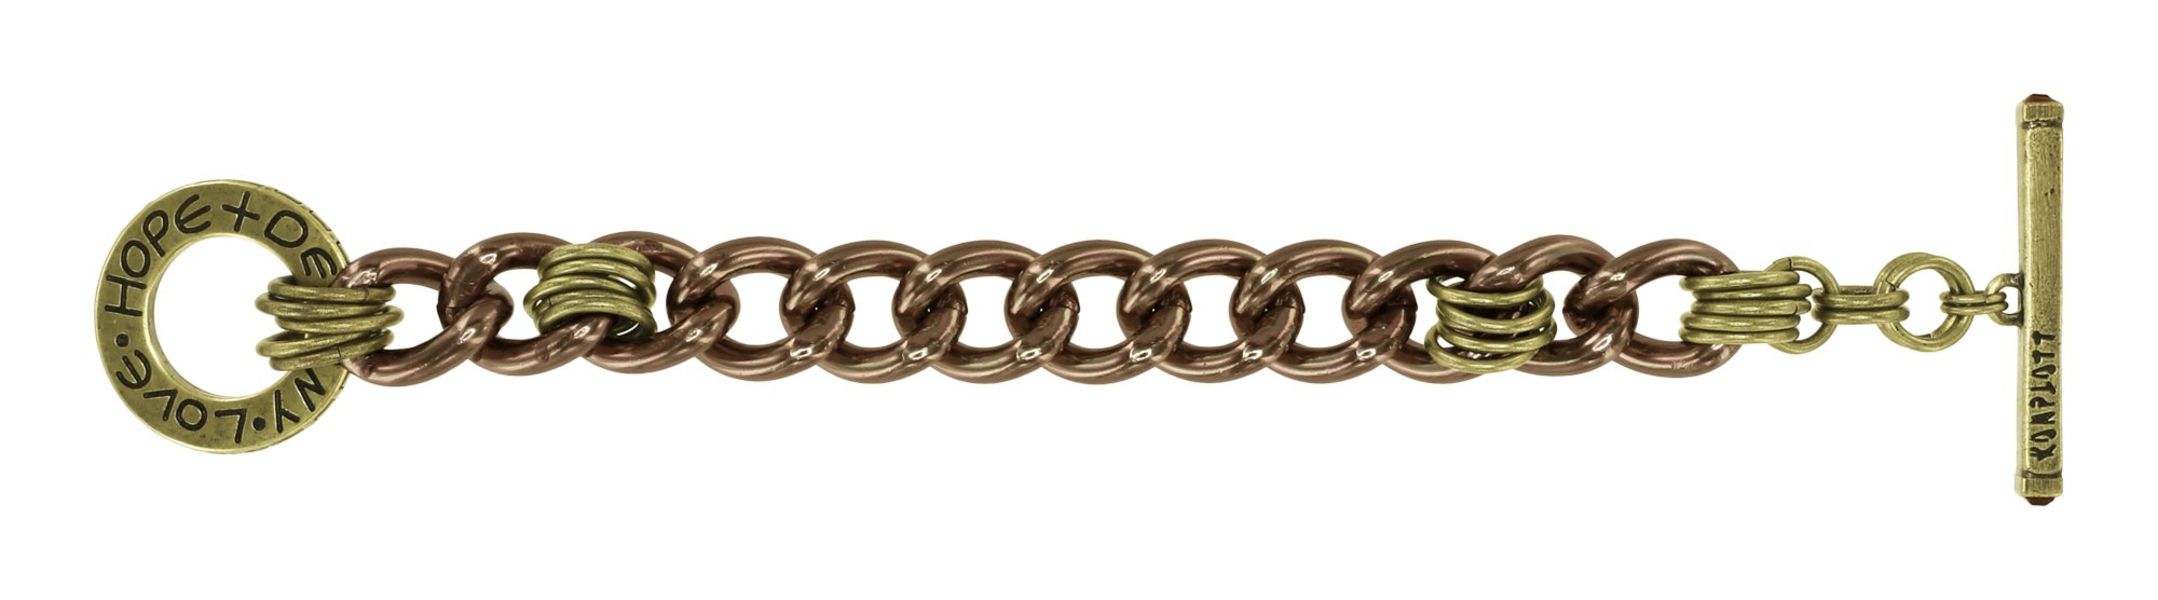 Konplott Bracelet - Unchained - gold/brown (0040)